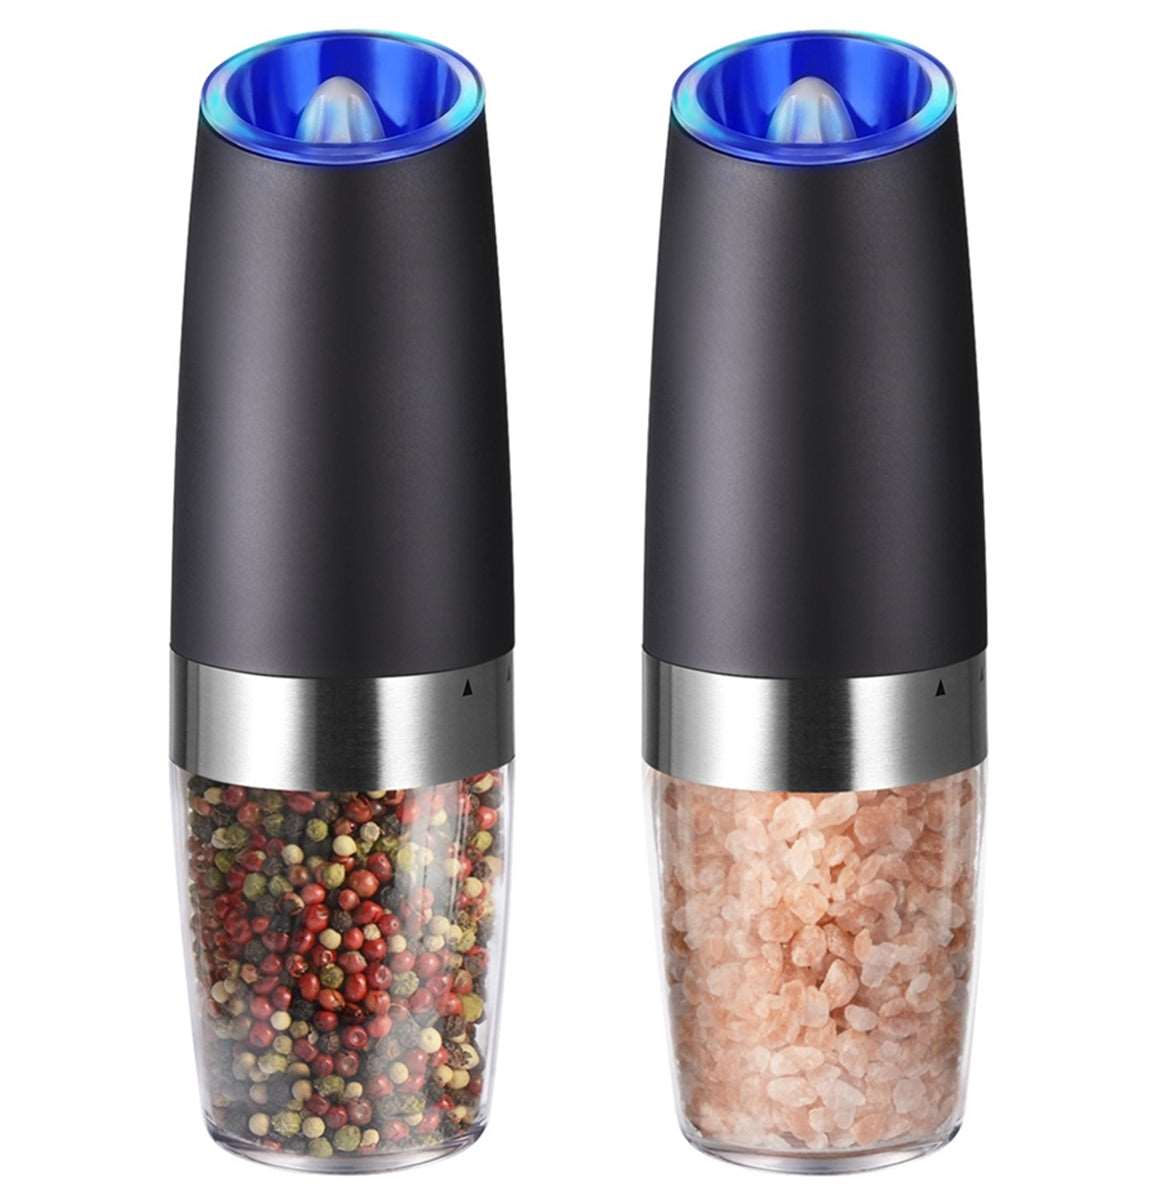 Gravitacijski mlinček za poper in sol